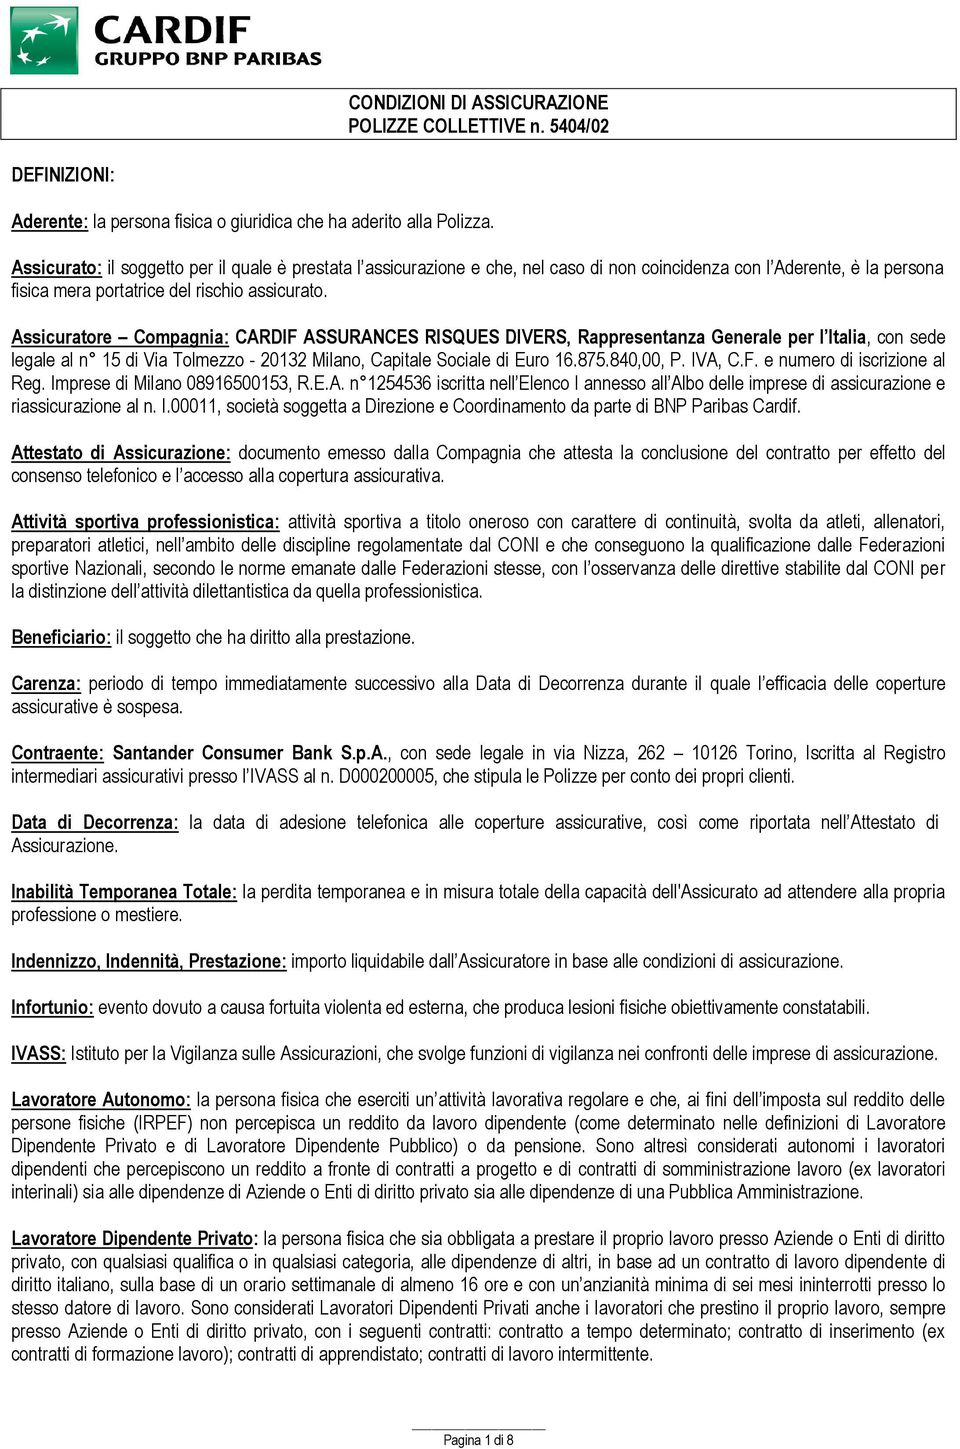 Assicuratore Compagnia: CARDIF ASSURANCES RISQUES DIVERS, Rappresentanza Generale per l Italia, con sede legale al n 15 di Via Tolmezzo - 20132 Milano, Capitale Sociale di Euro 16.875.840,00, P.